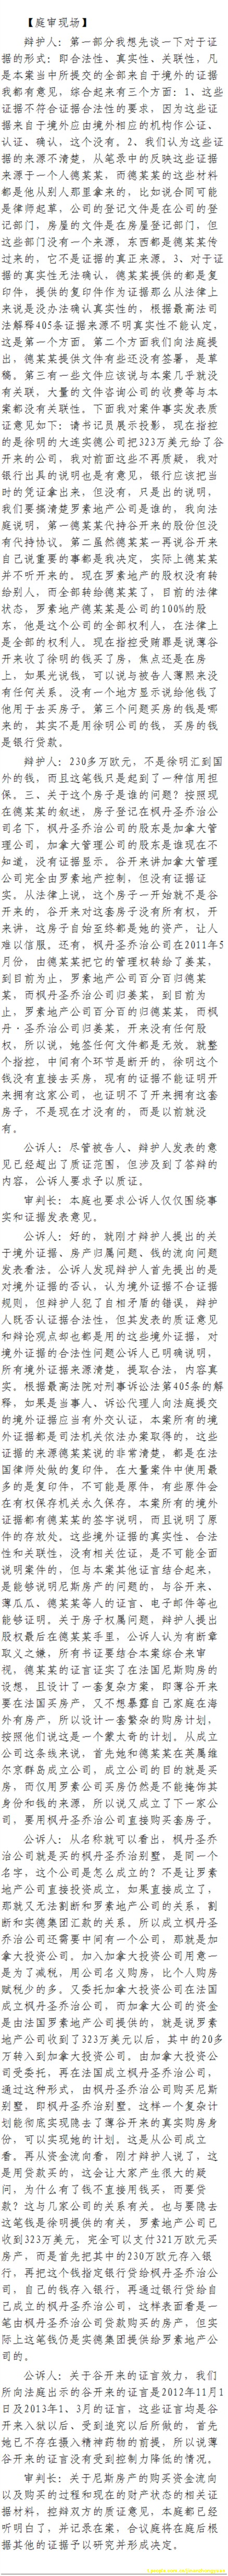 济南市中级法院官方微博公布的8月23日庭审现场记录（5）